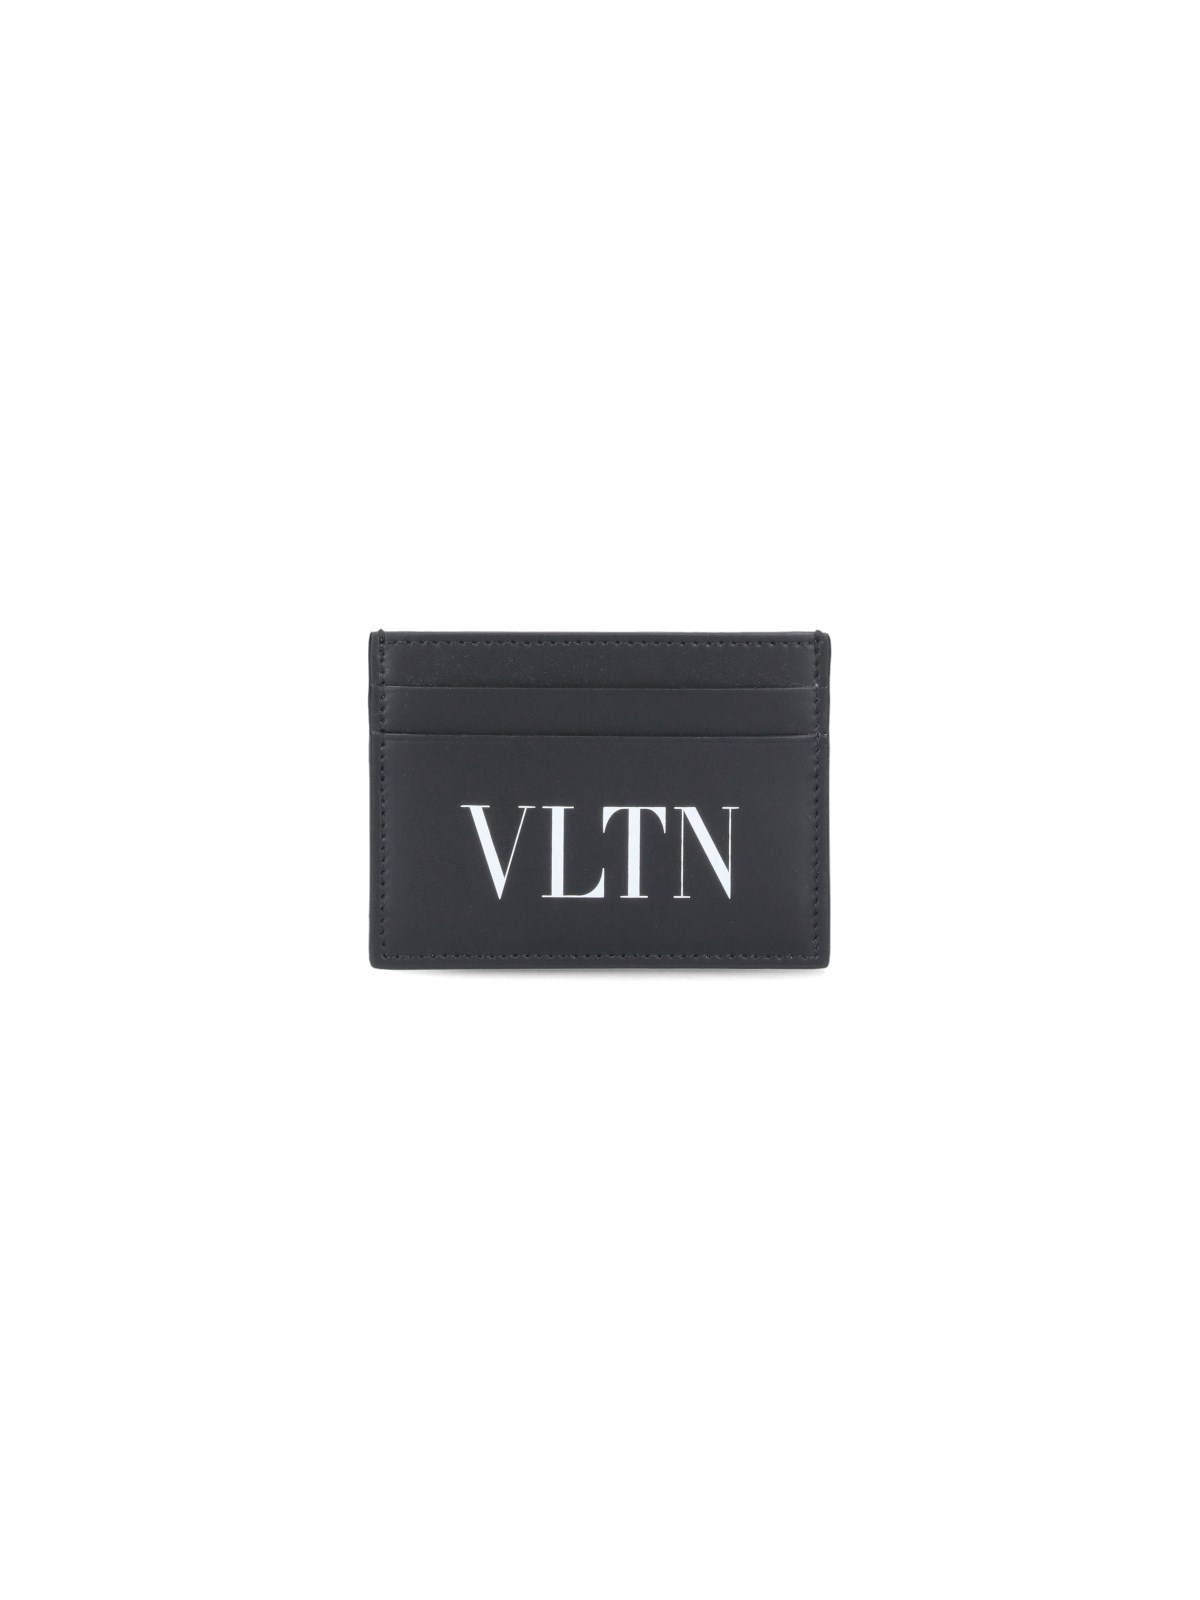 Valentino Garavani 'vltn' Card Holder In Black  